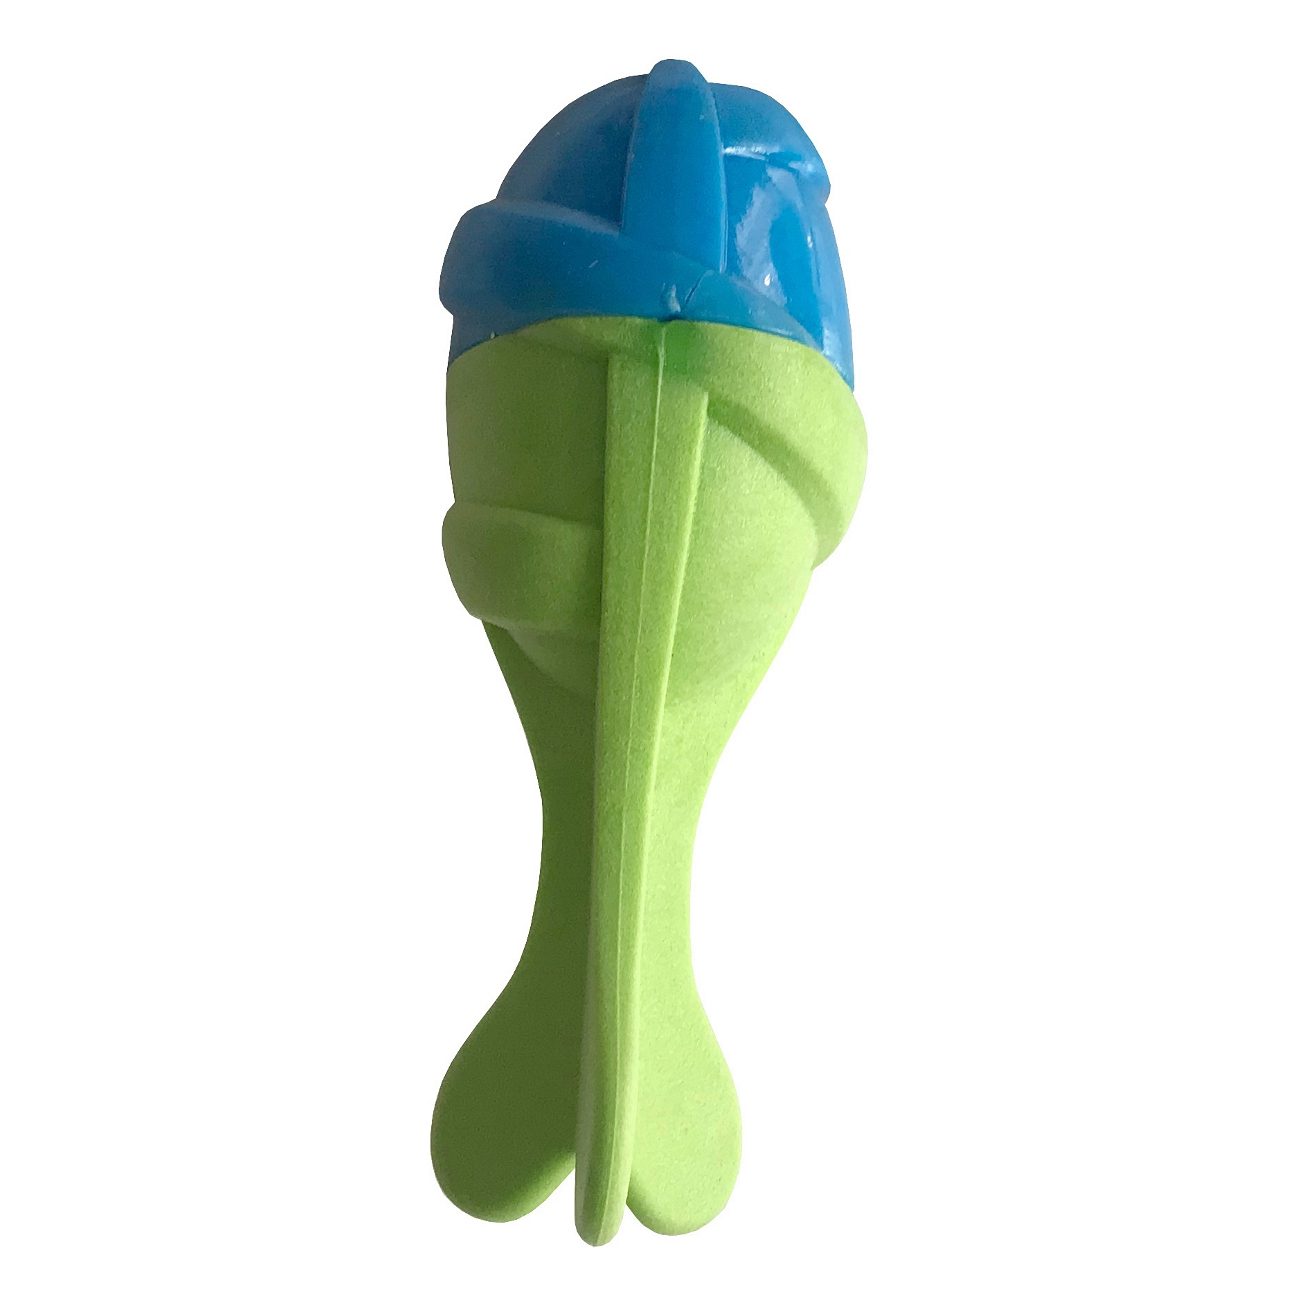 Lisinya205 Sağlam Plastik Sesli Balık Köpek Oyuncağı 13 x 5 cm Mavi Yeşil